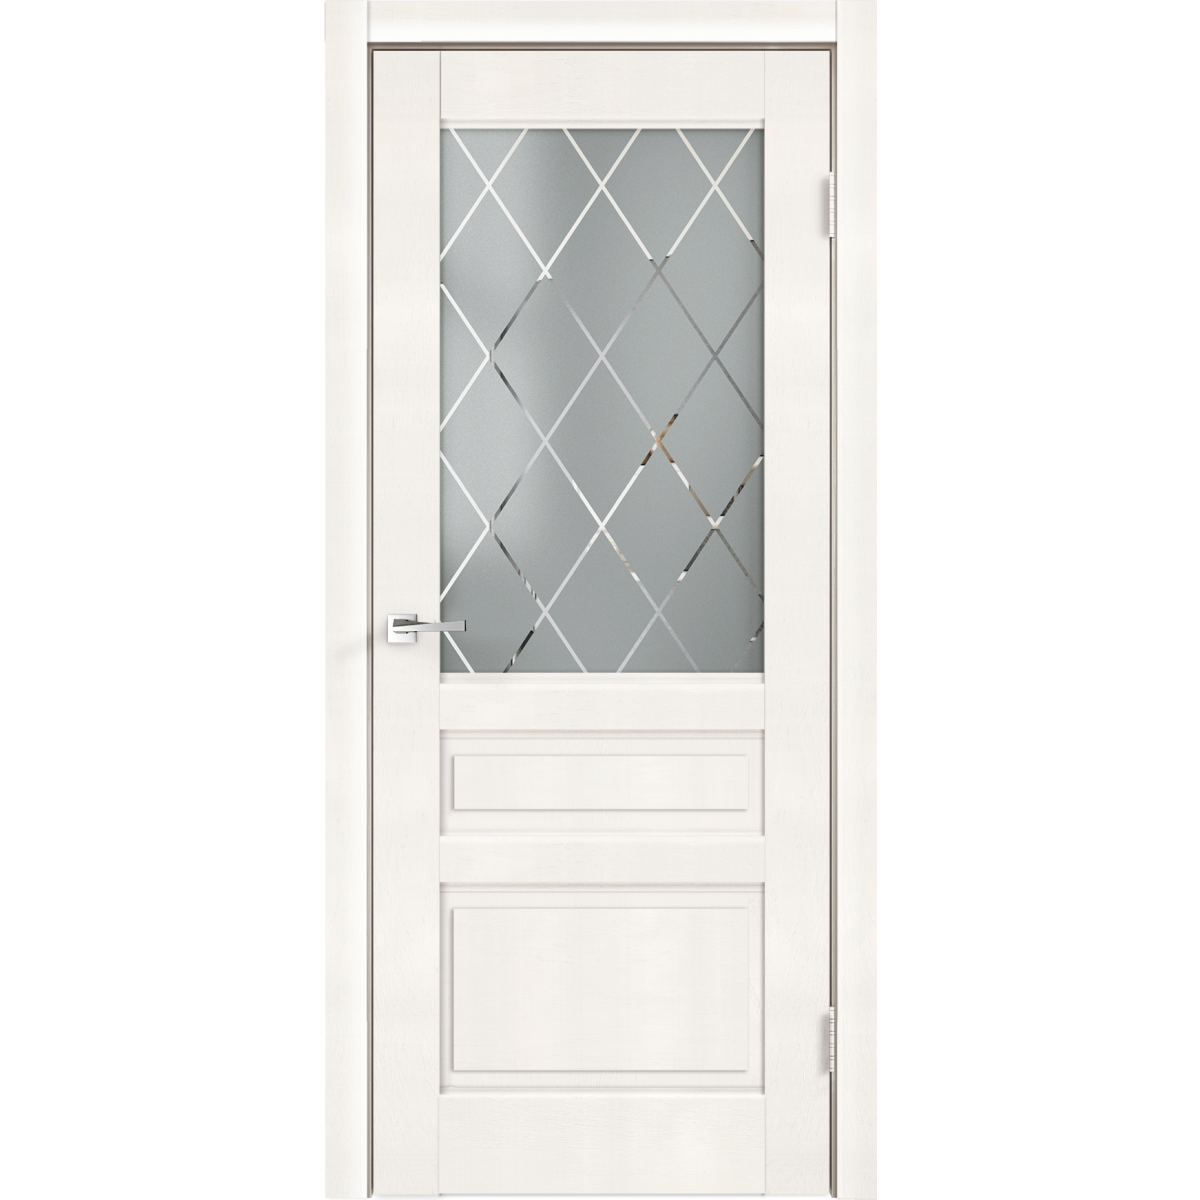 Дверь межкомнатная остеклённая «Летиция» 90x200 см, ПВХ, цвет дуб пломбир, с фурнитурой